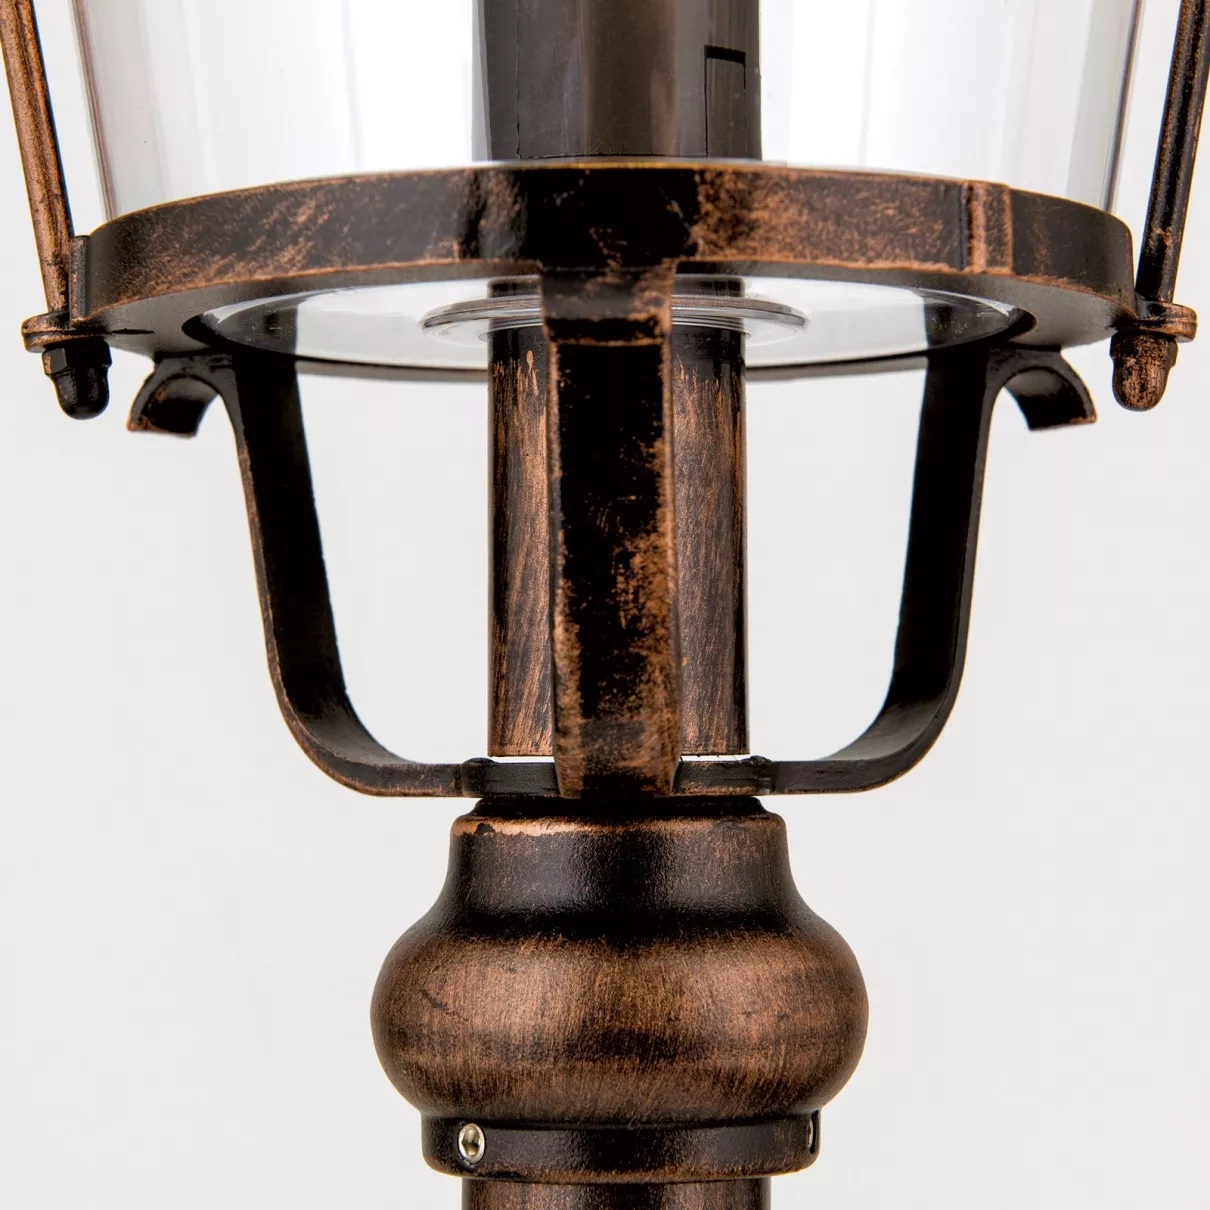 KENZO kültéri állólámpa; m:120cm; 1xE27  -  ORI-AL 11K/360.44 schw.-kupfer   (1xE27)